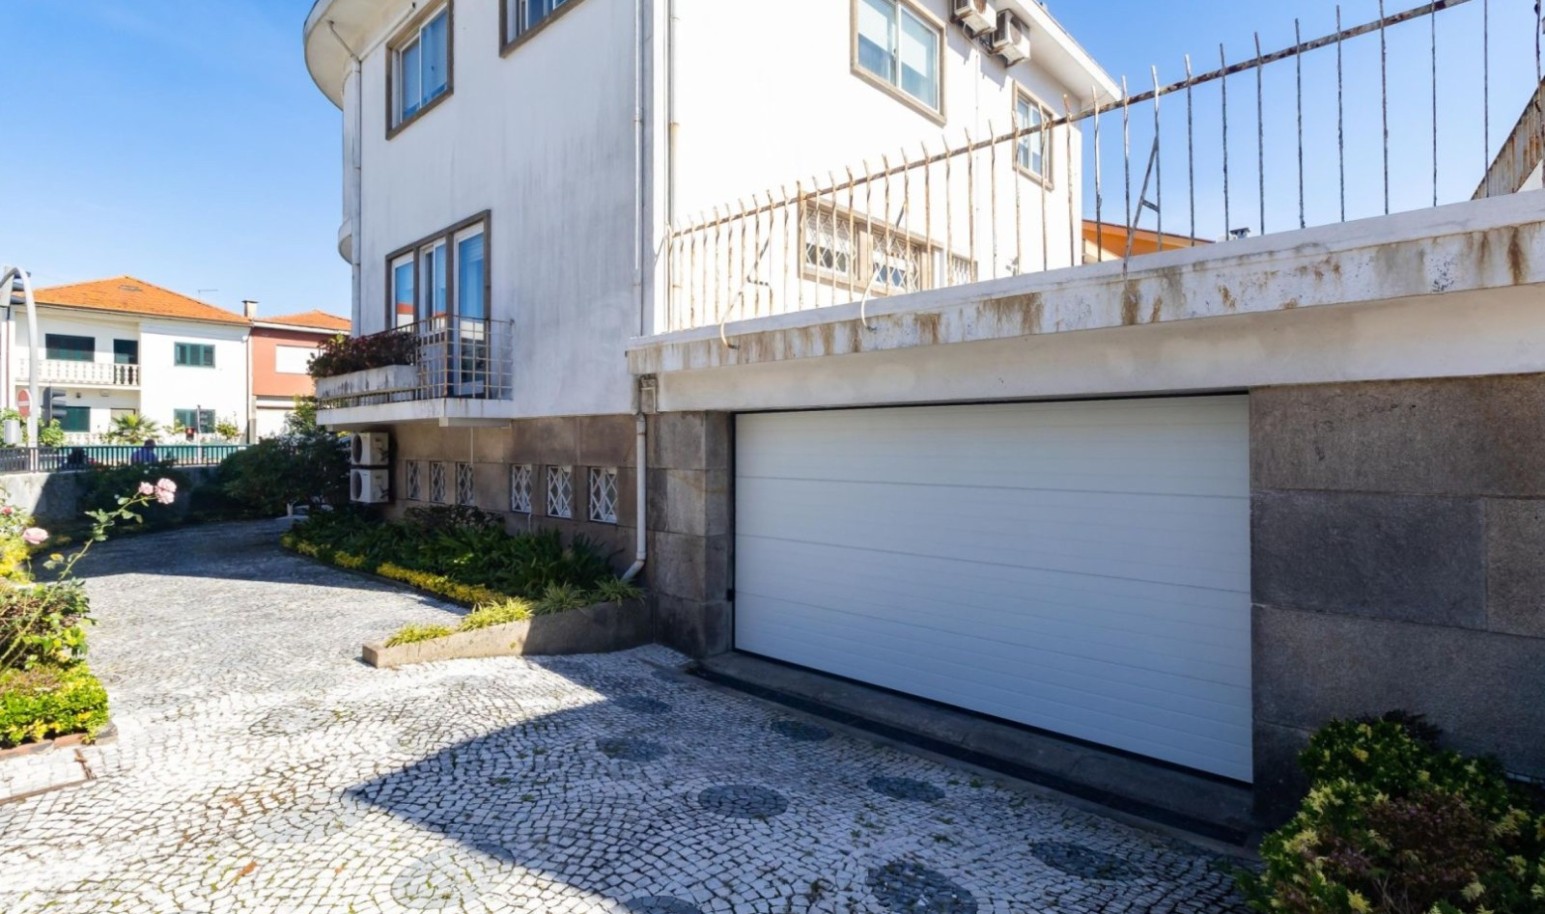 Moradia V4 com terraço, para venda, na Boavista, Porto, Portugal_231344